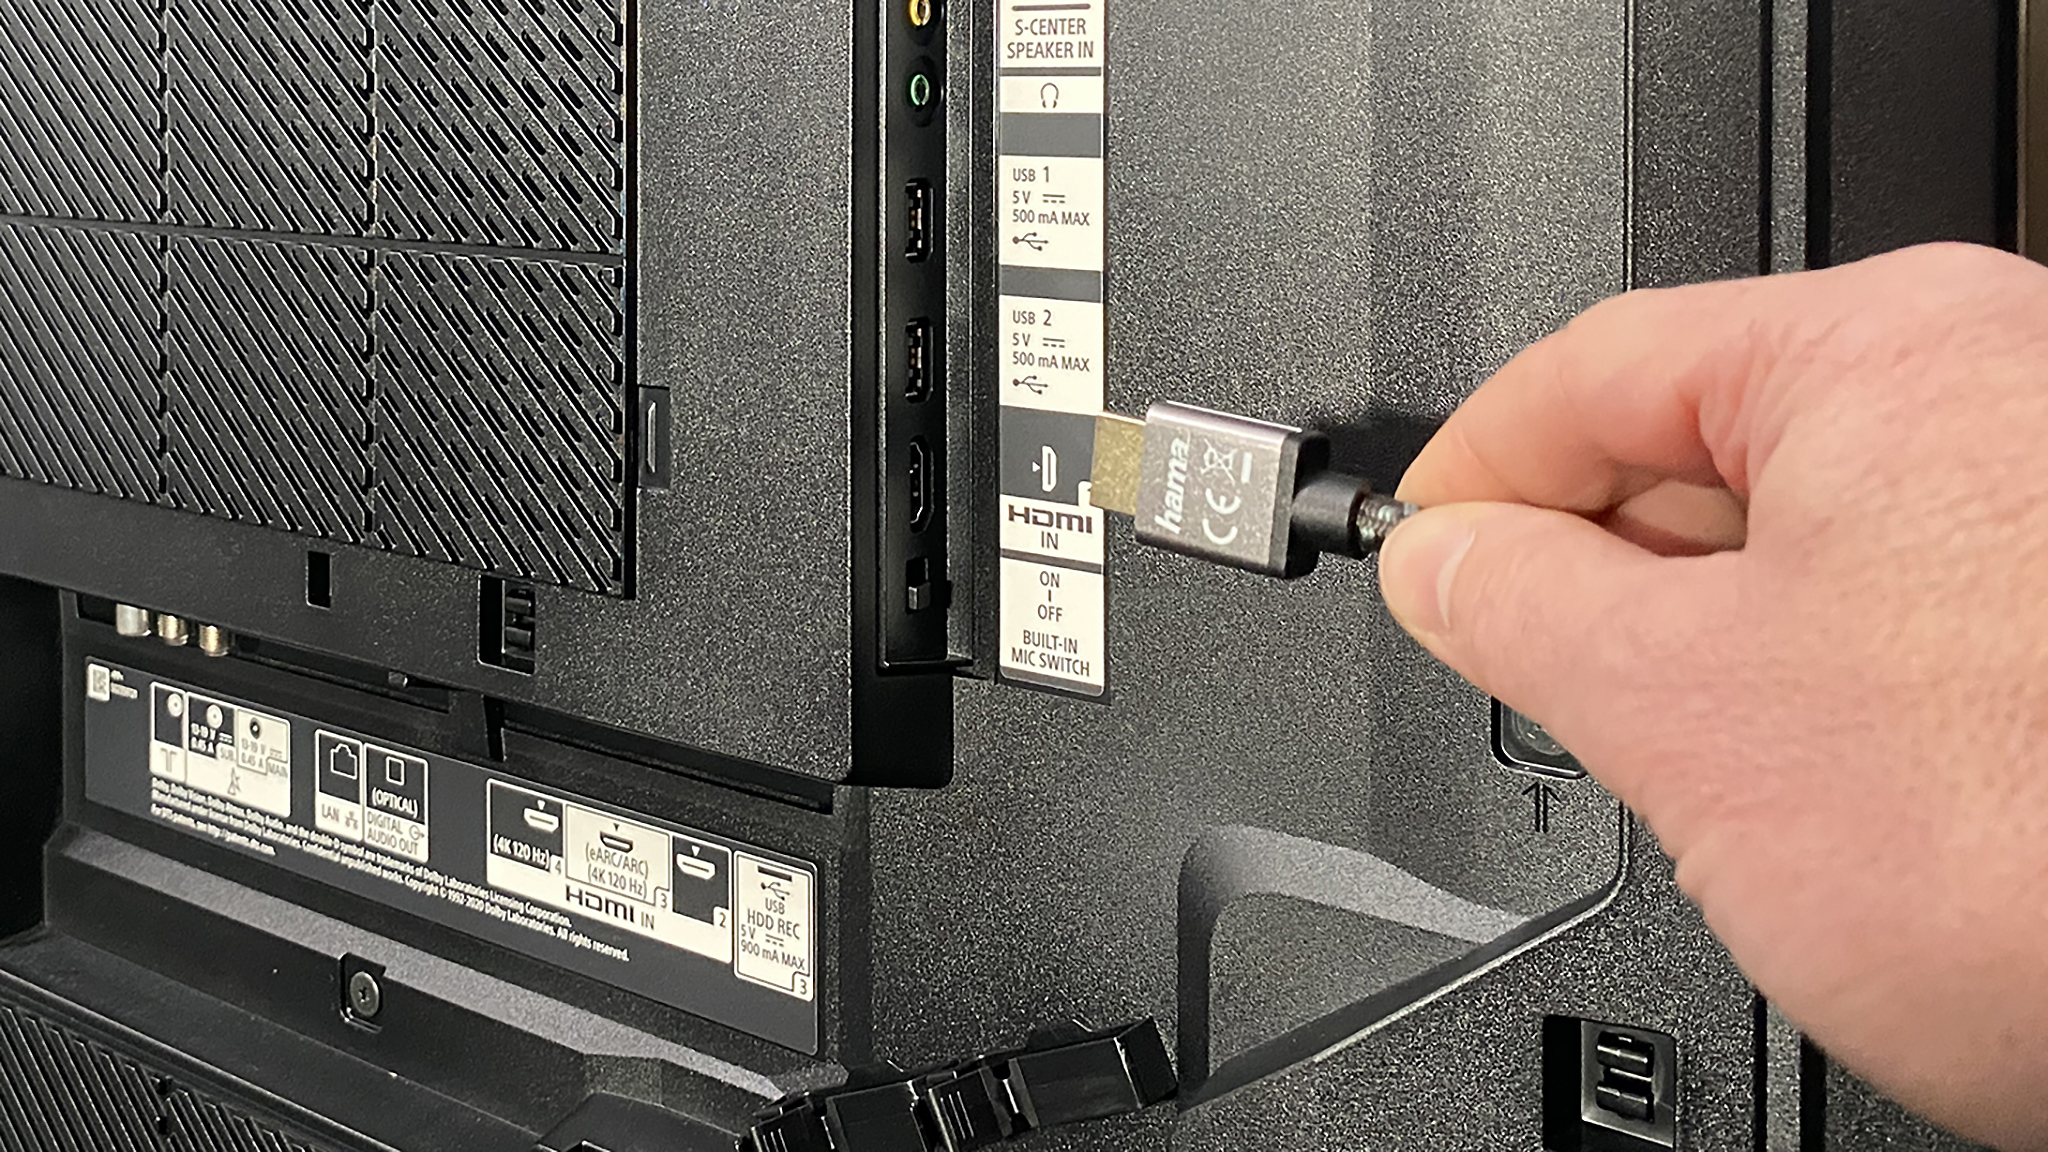 Überprüfen Sie die Verbindung des HDMI-Kabels mit dem Apple TV und dem Fernseher.
Stellen Sie sicher, dass das HDMI-Kabel korrekt in die entsprechenden Anschlüsse gesteckt ist.